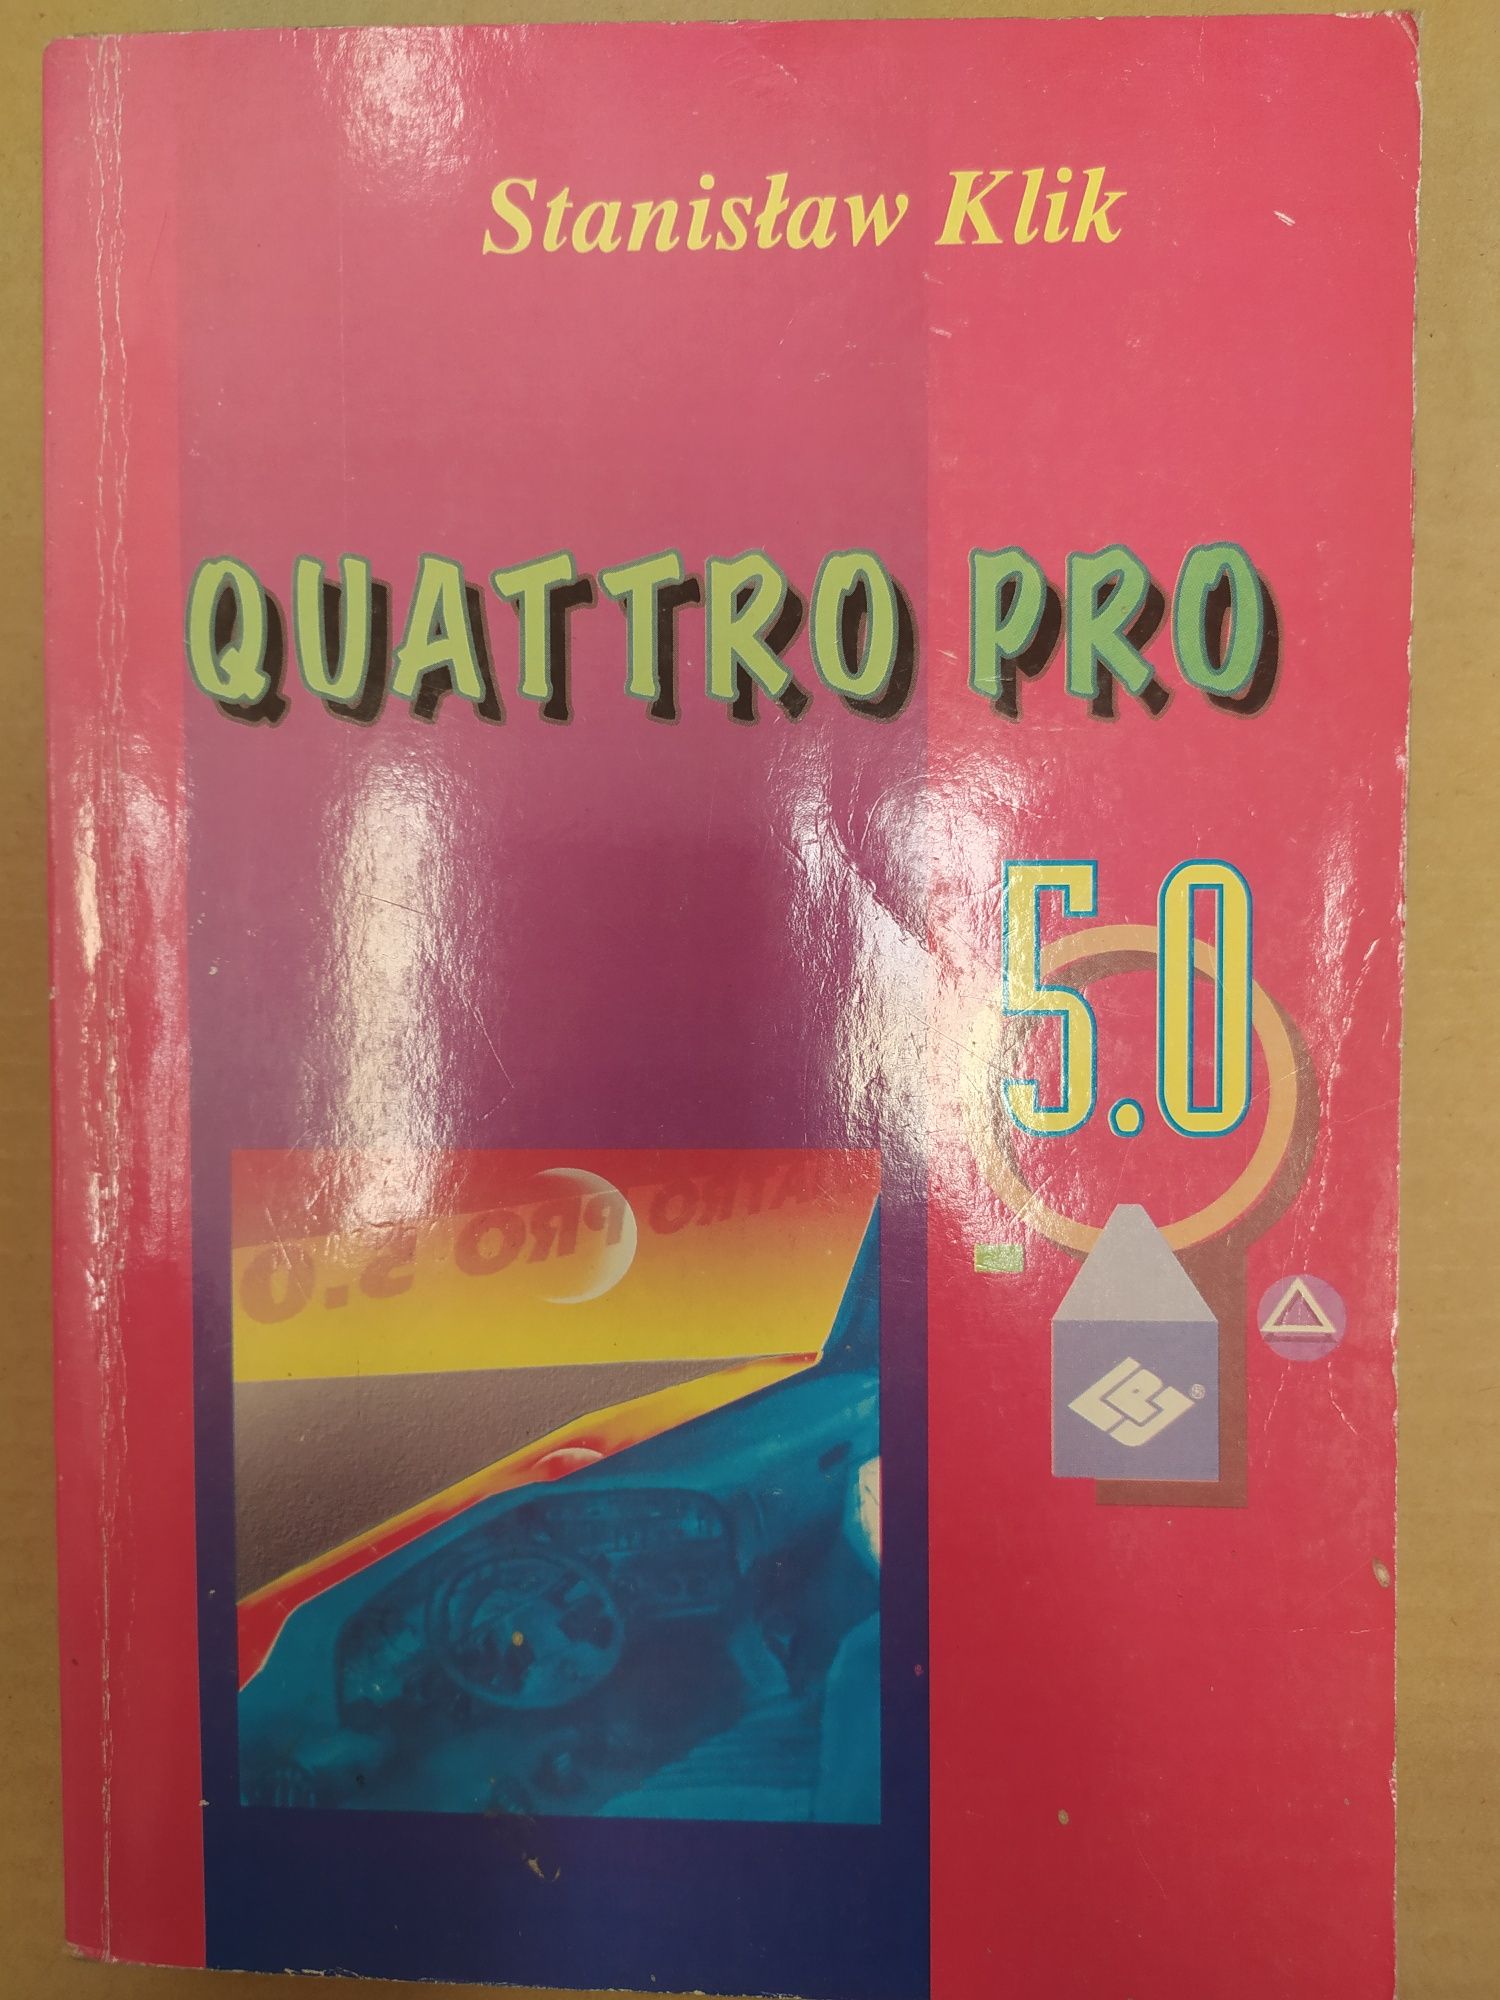 Quattro Pro 5.0 - Stanisław Klik